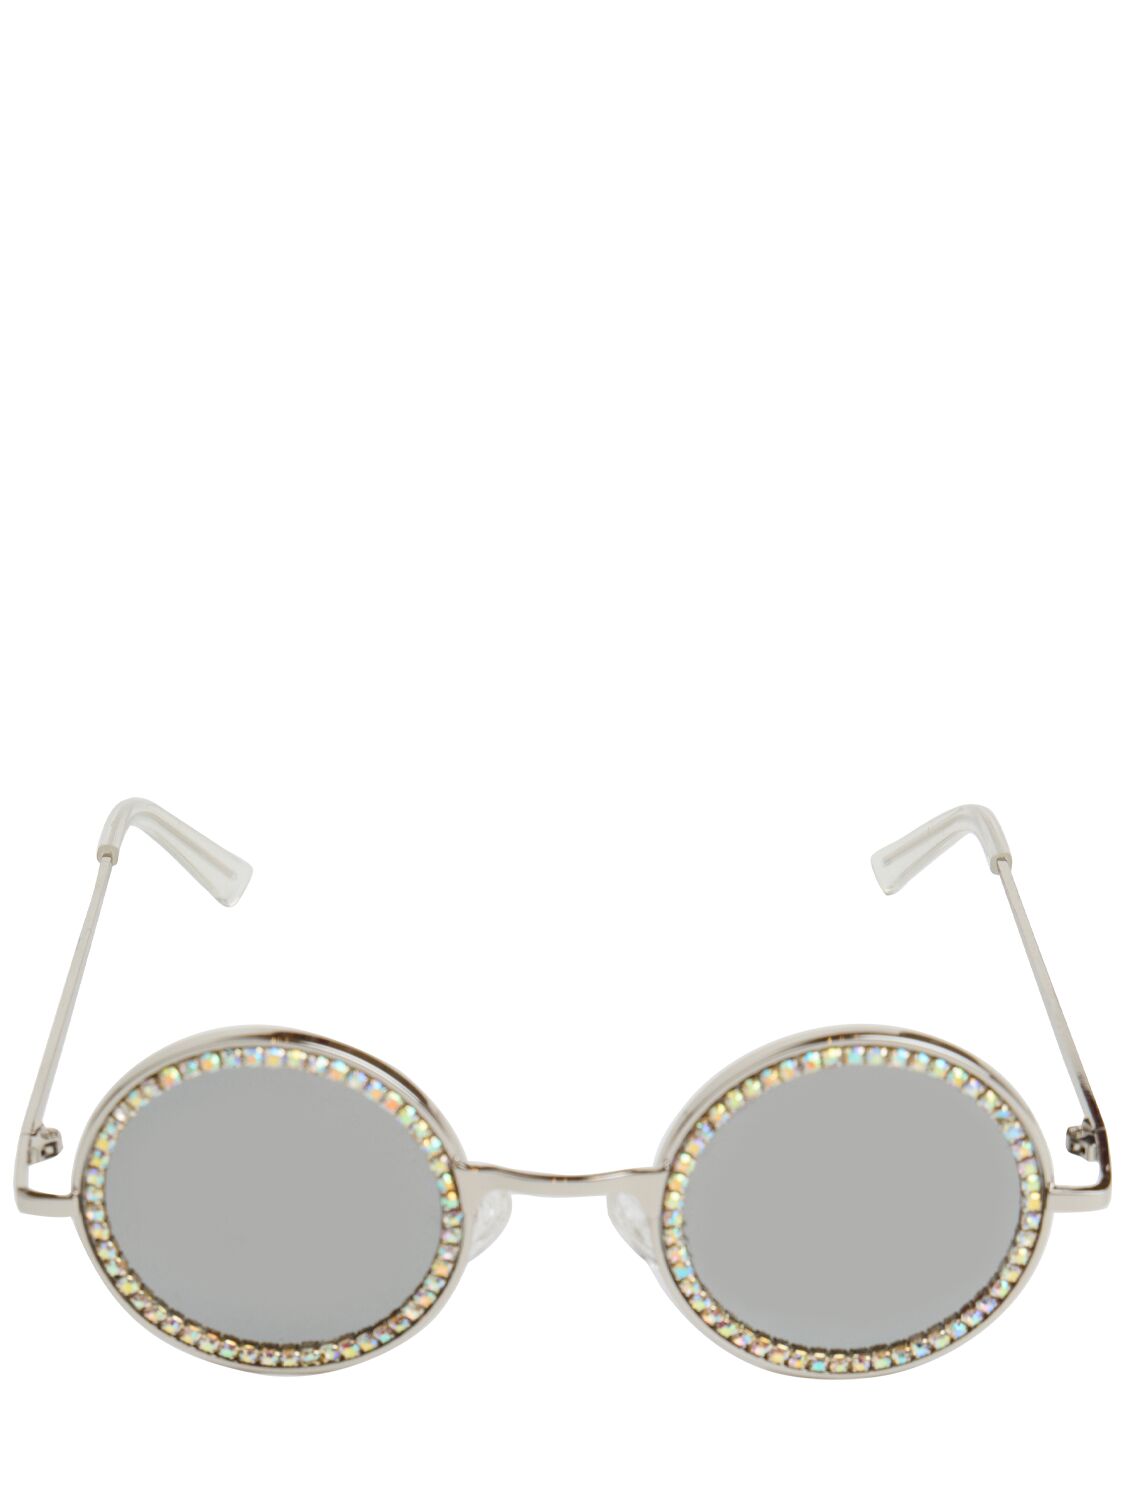 Image of Embellished Round Sunglasses